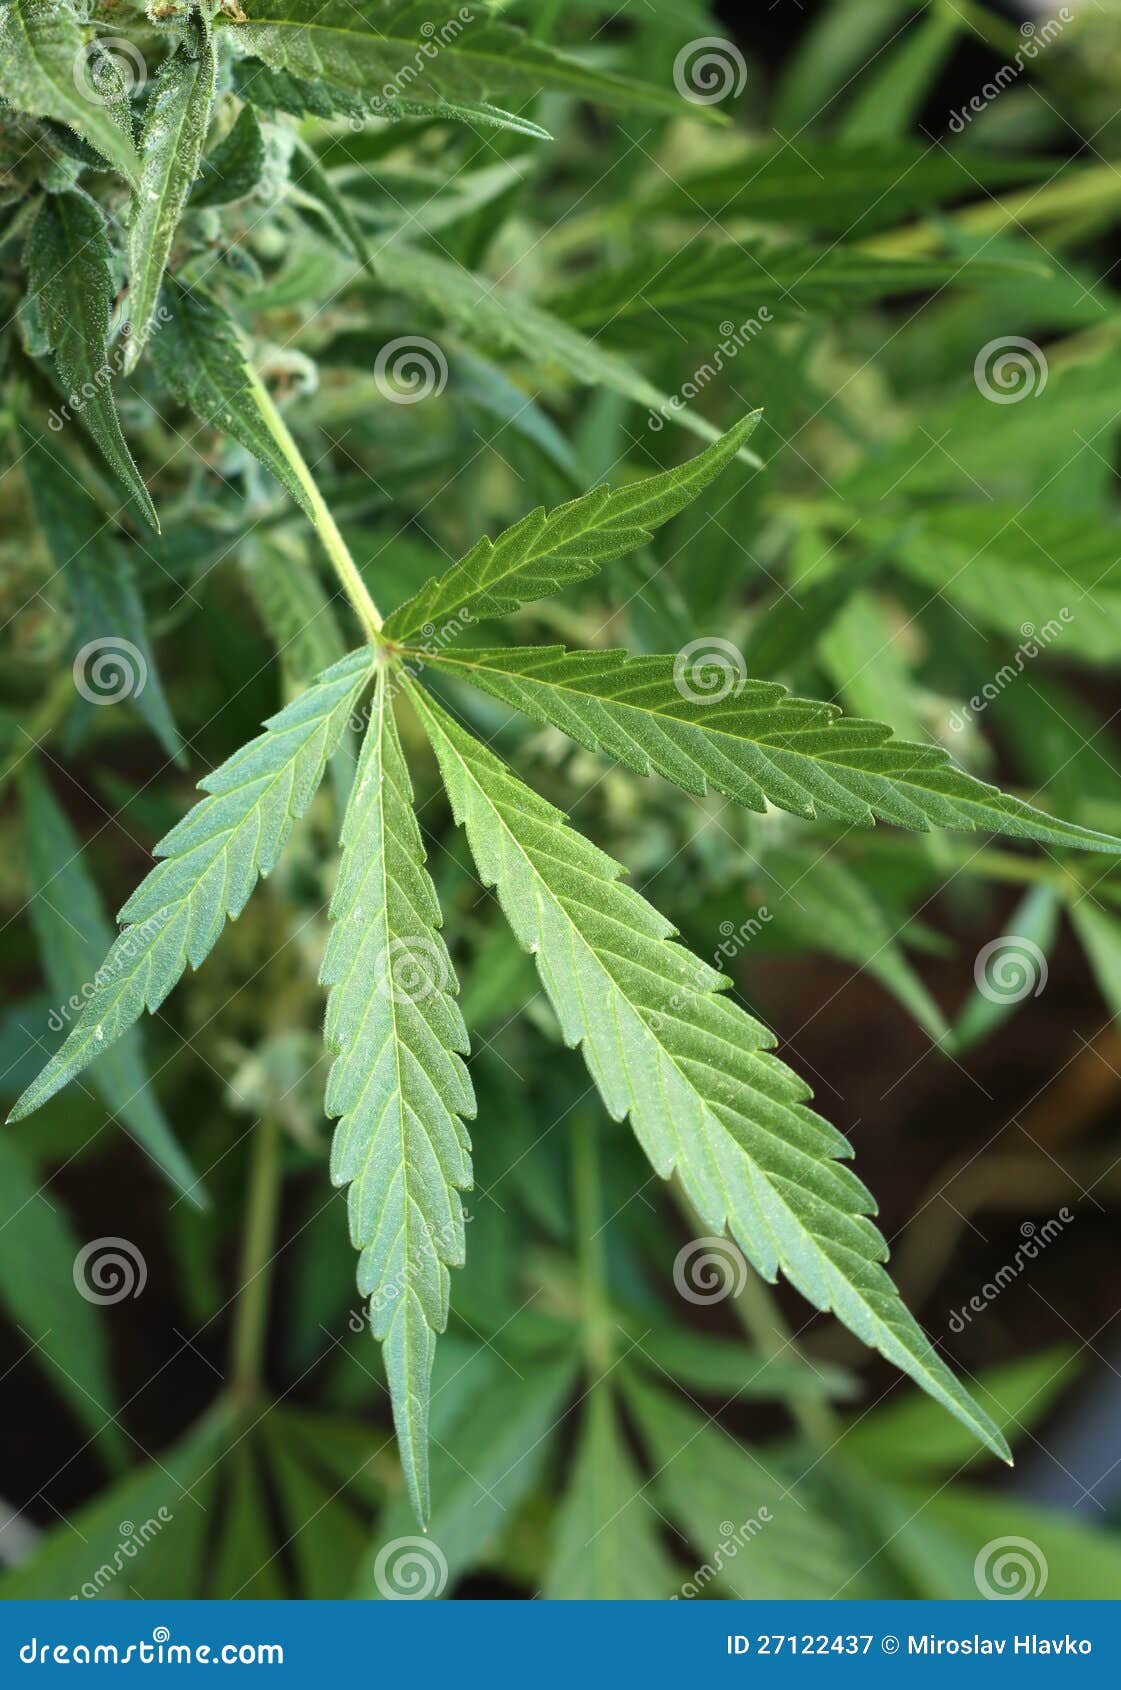 Фото листьев марихуаны любавин конопля скачать